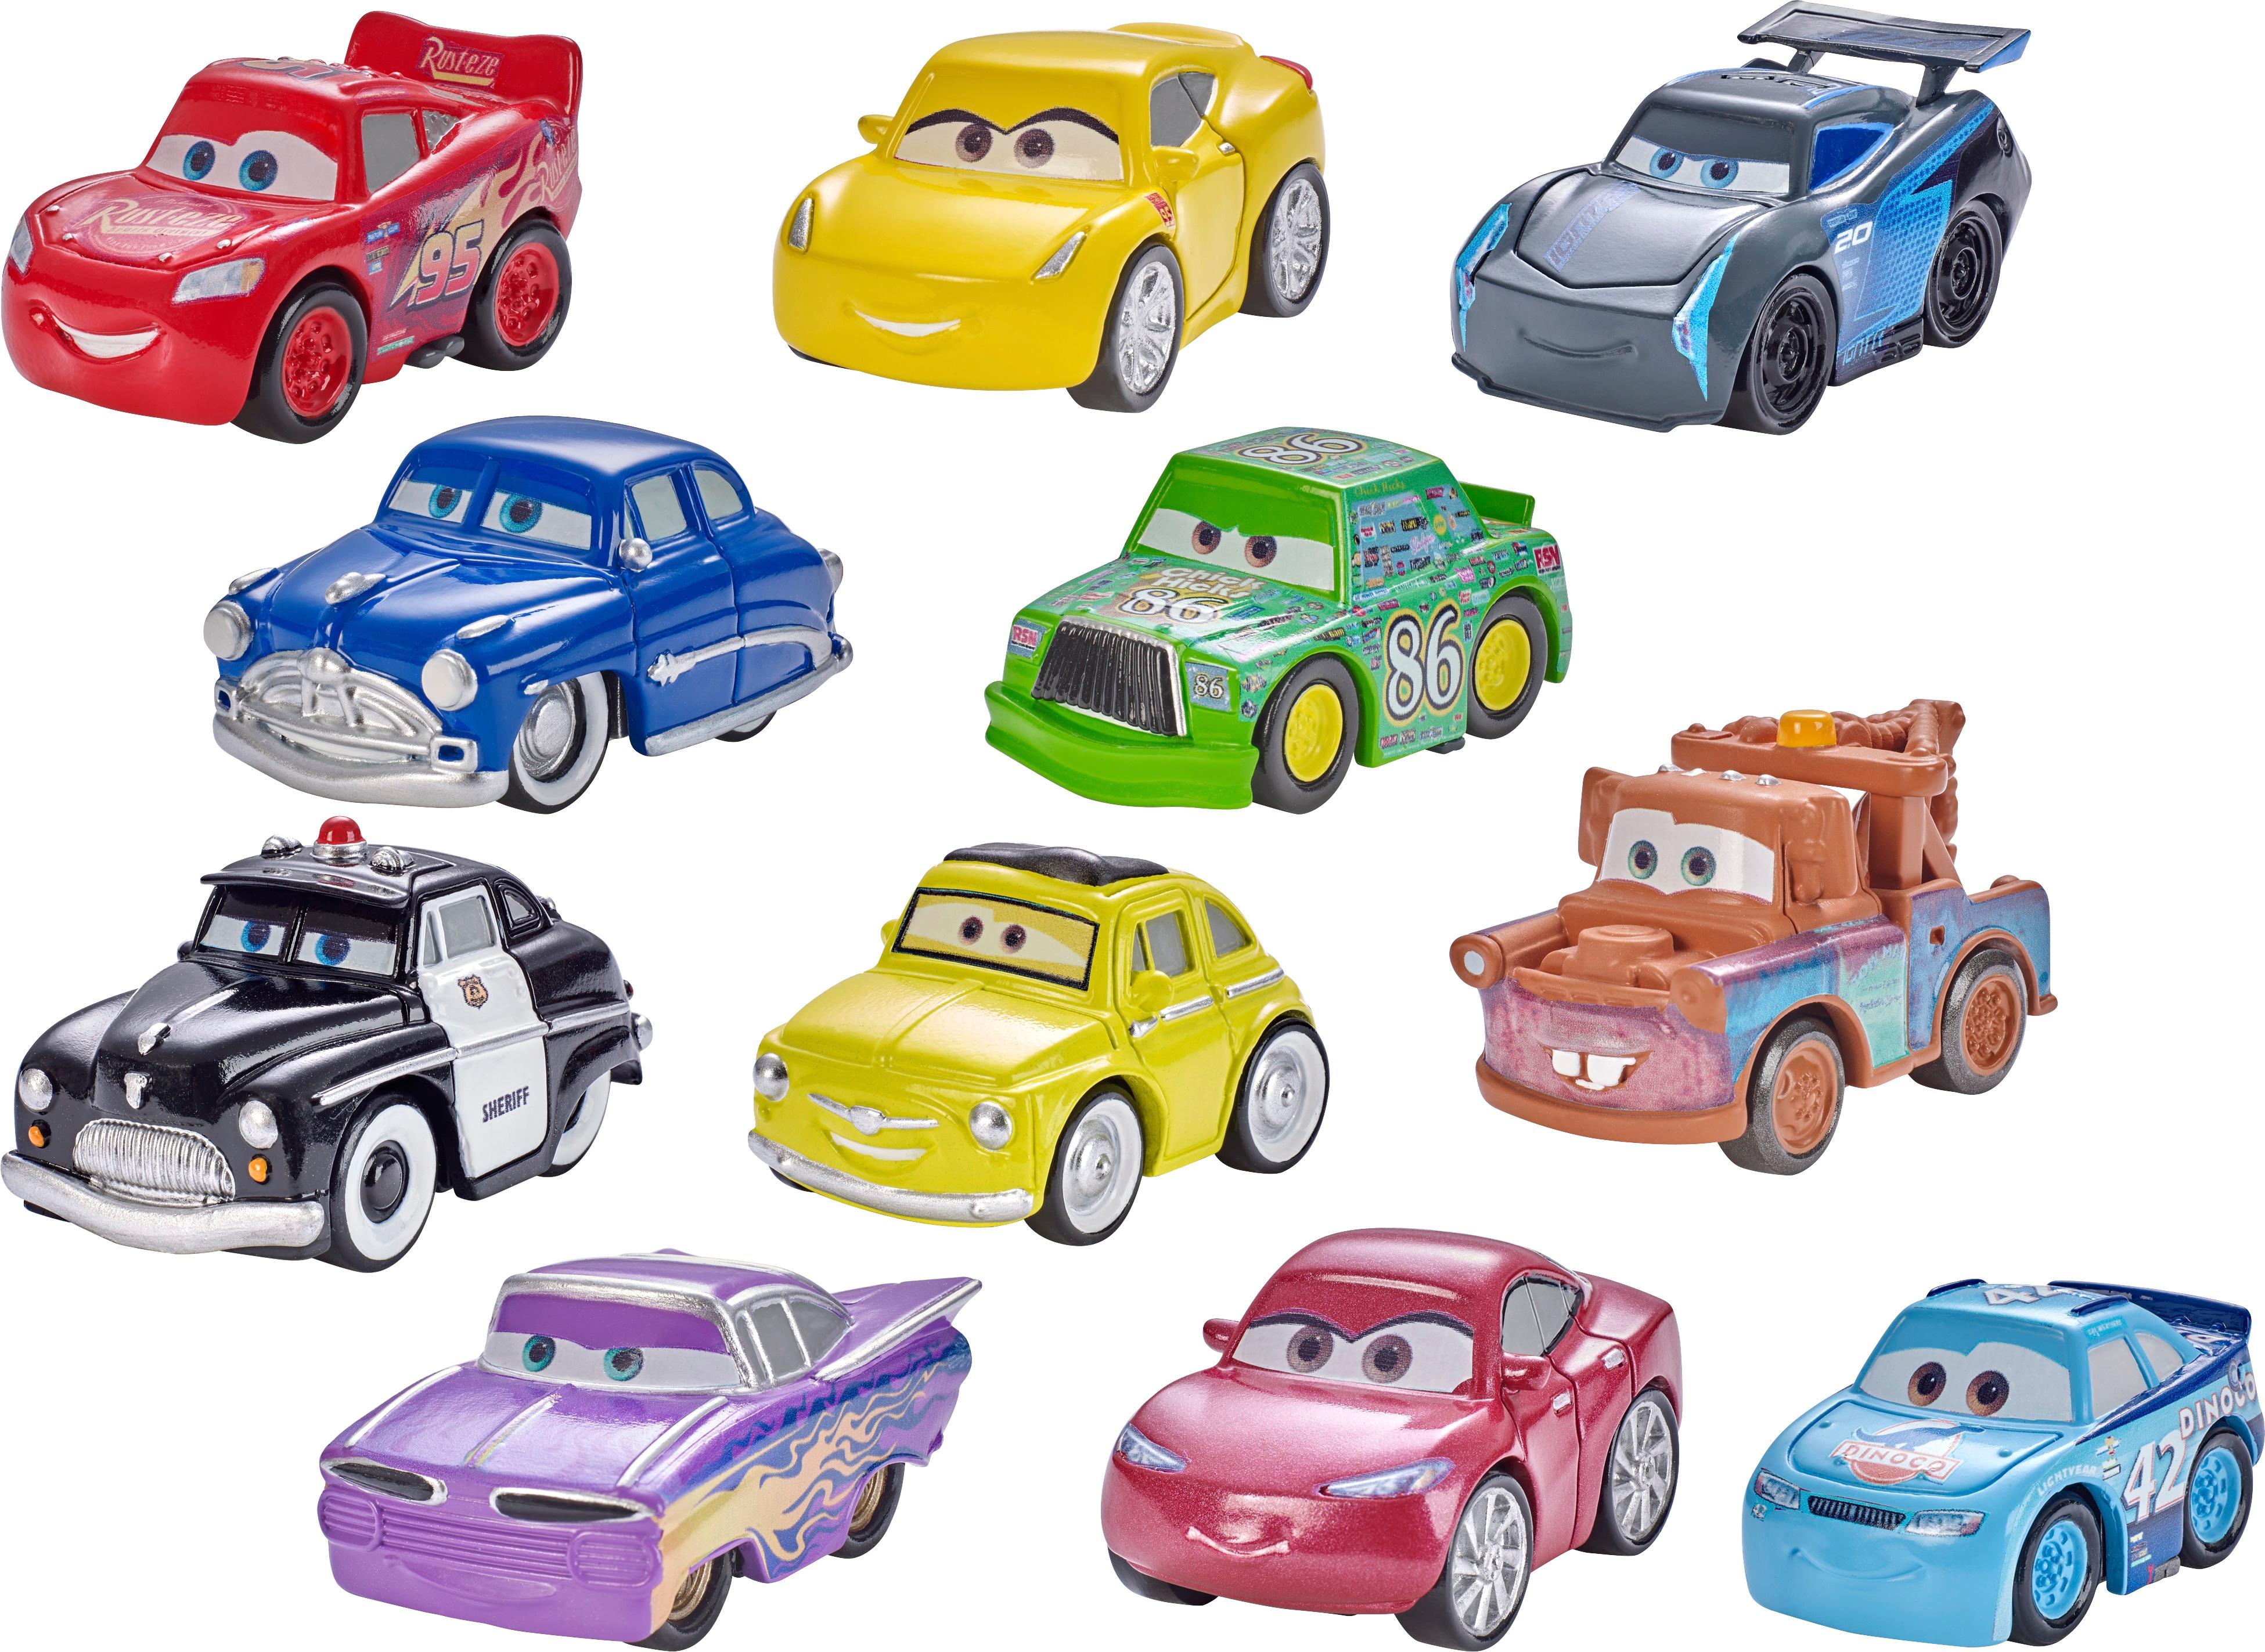 Cars - Mini Racers (varios modelos), Cars